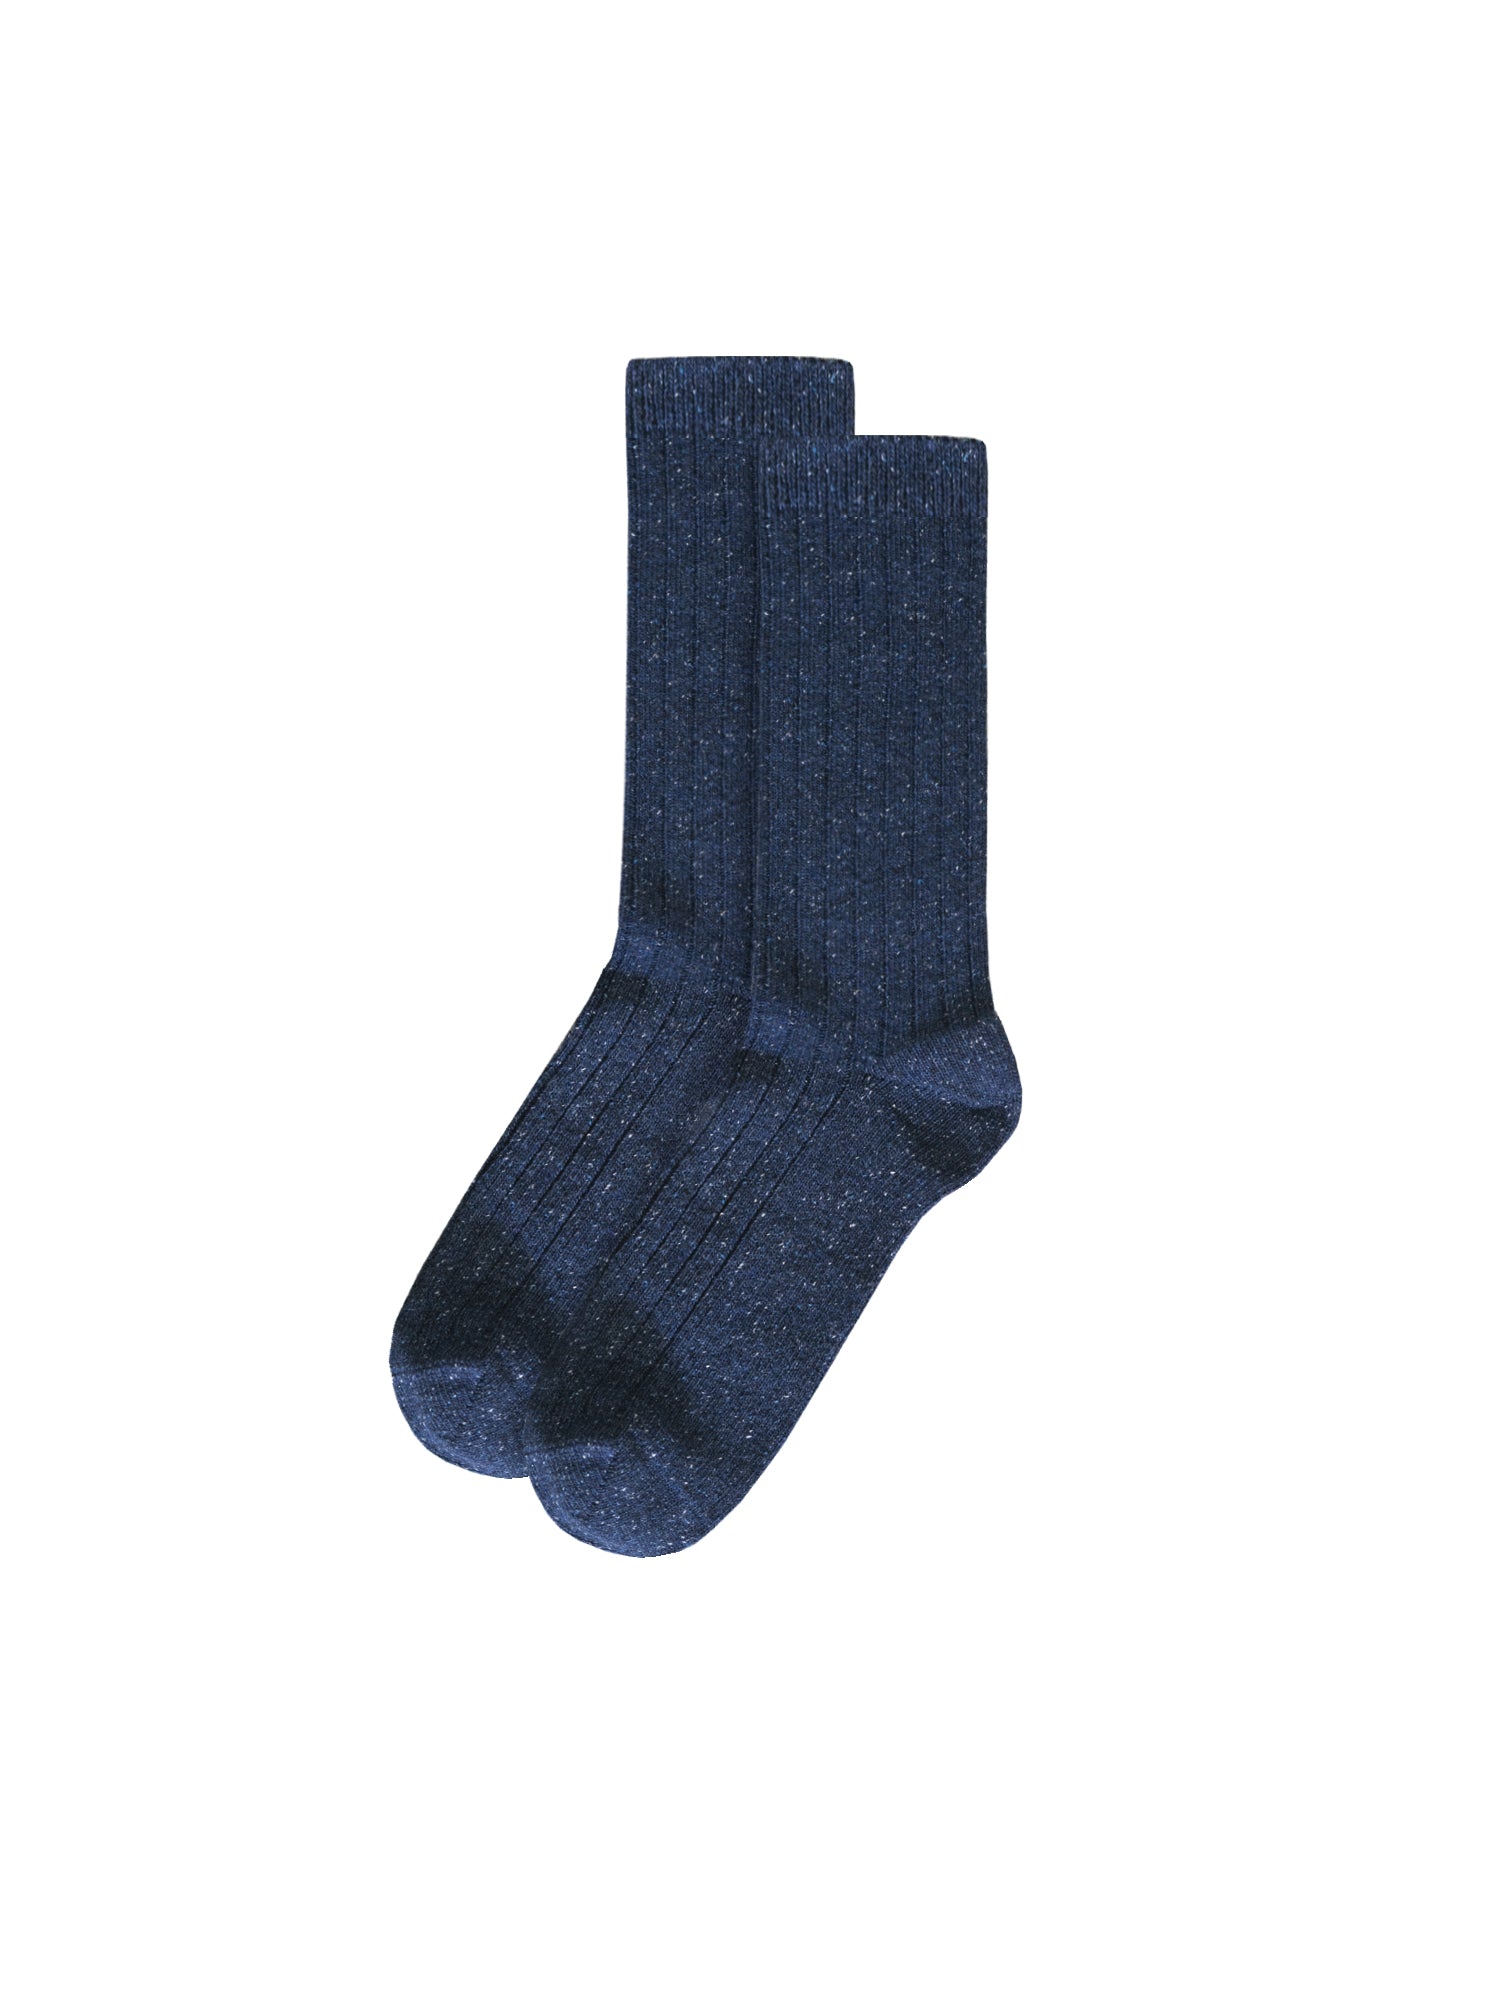 FUXBAU Fair Fashion Socken in navy mit dezenten Neps  aus Wolle und unter fairen und nachhaltigen Bedingungen in Portugal hergestellt.